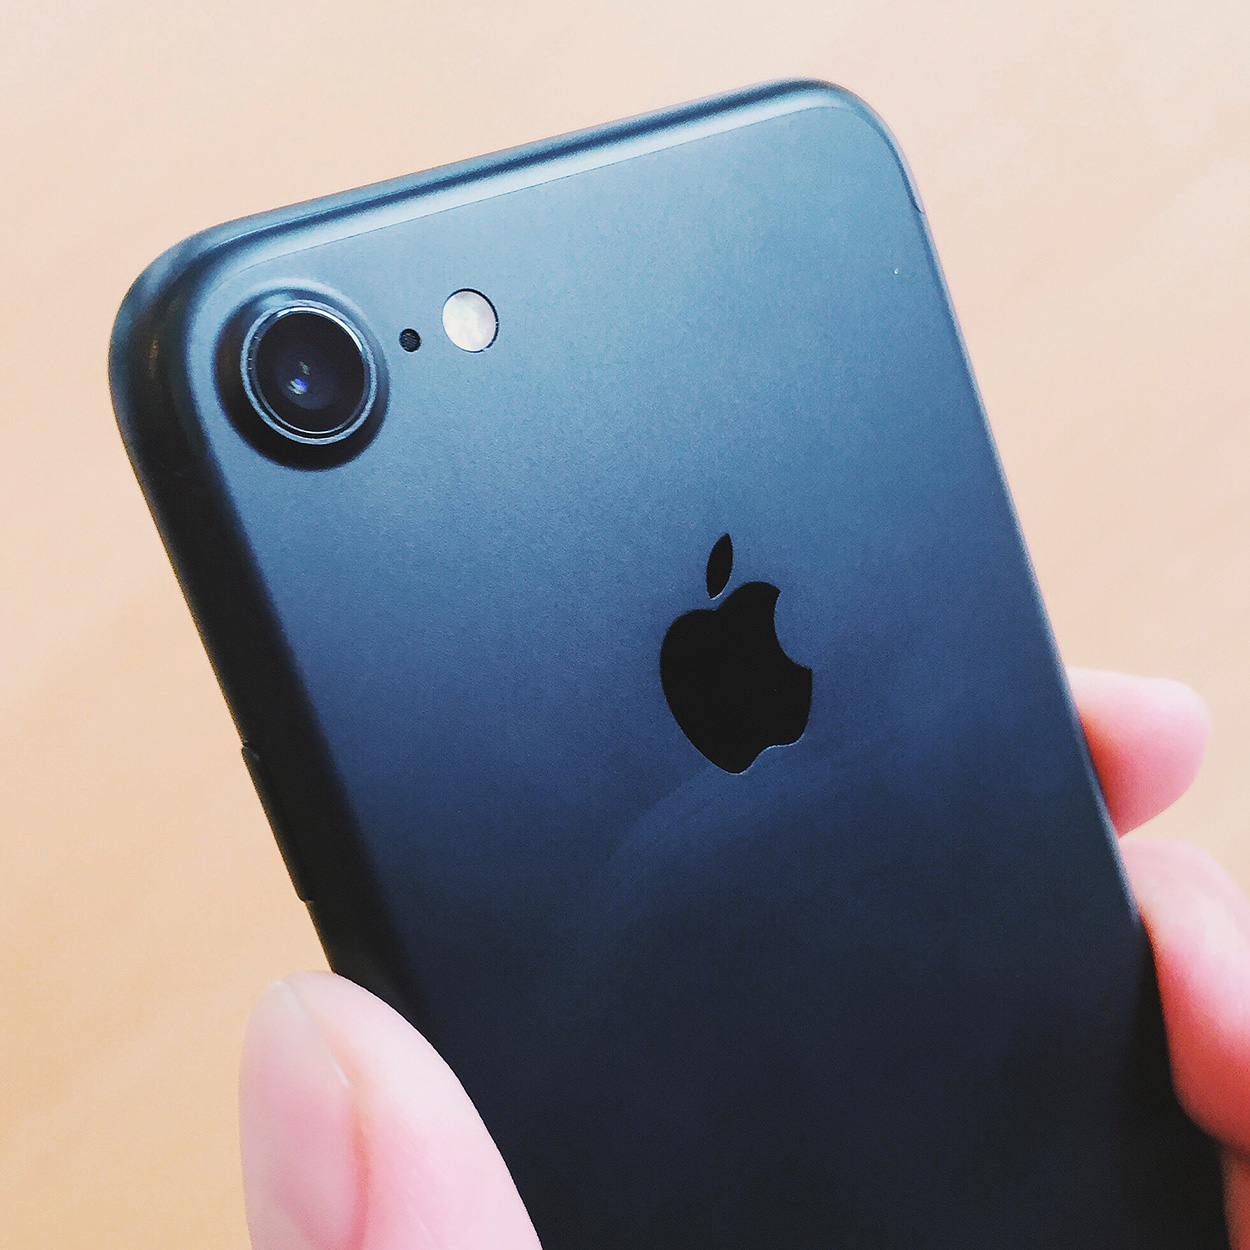 iPhone 7 - Black